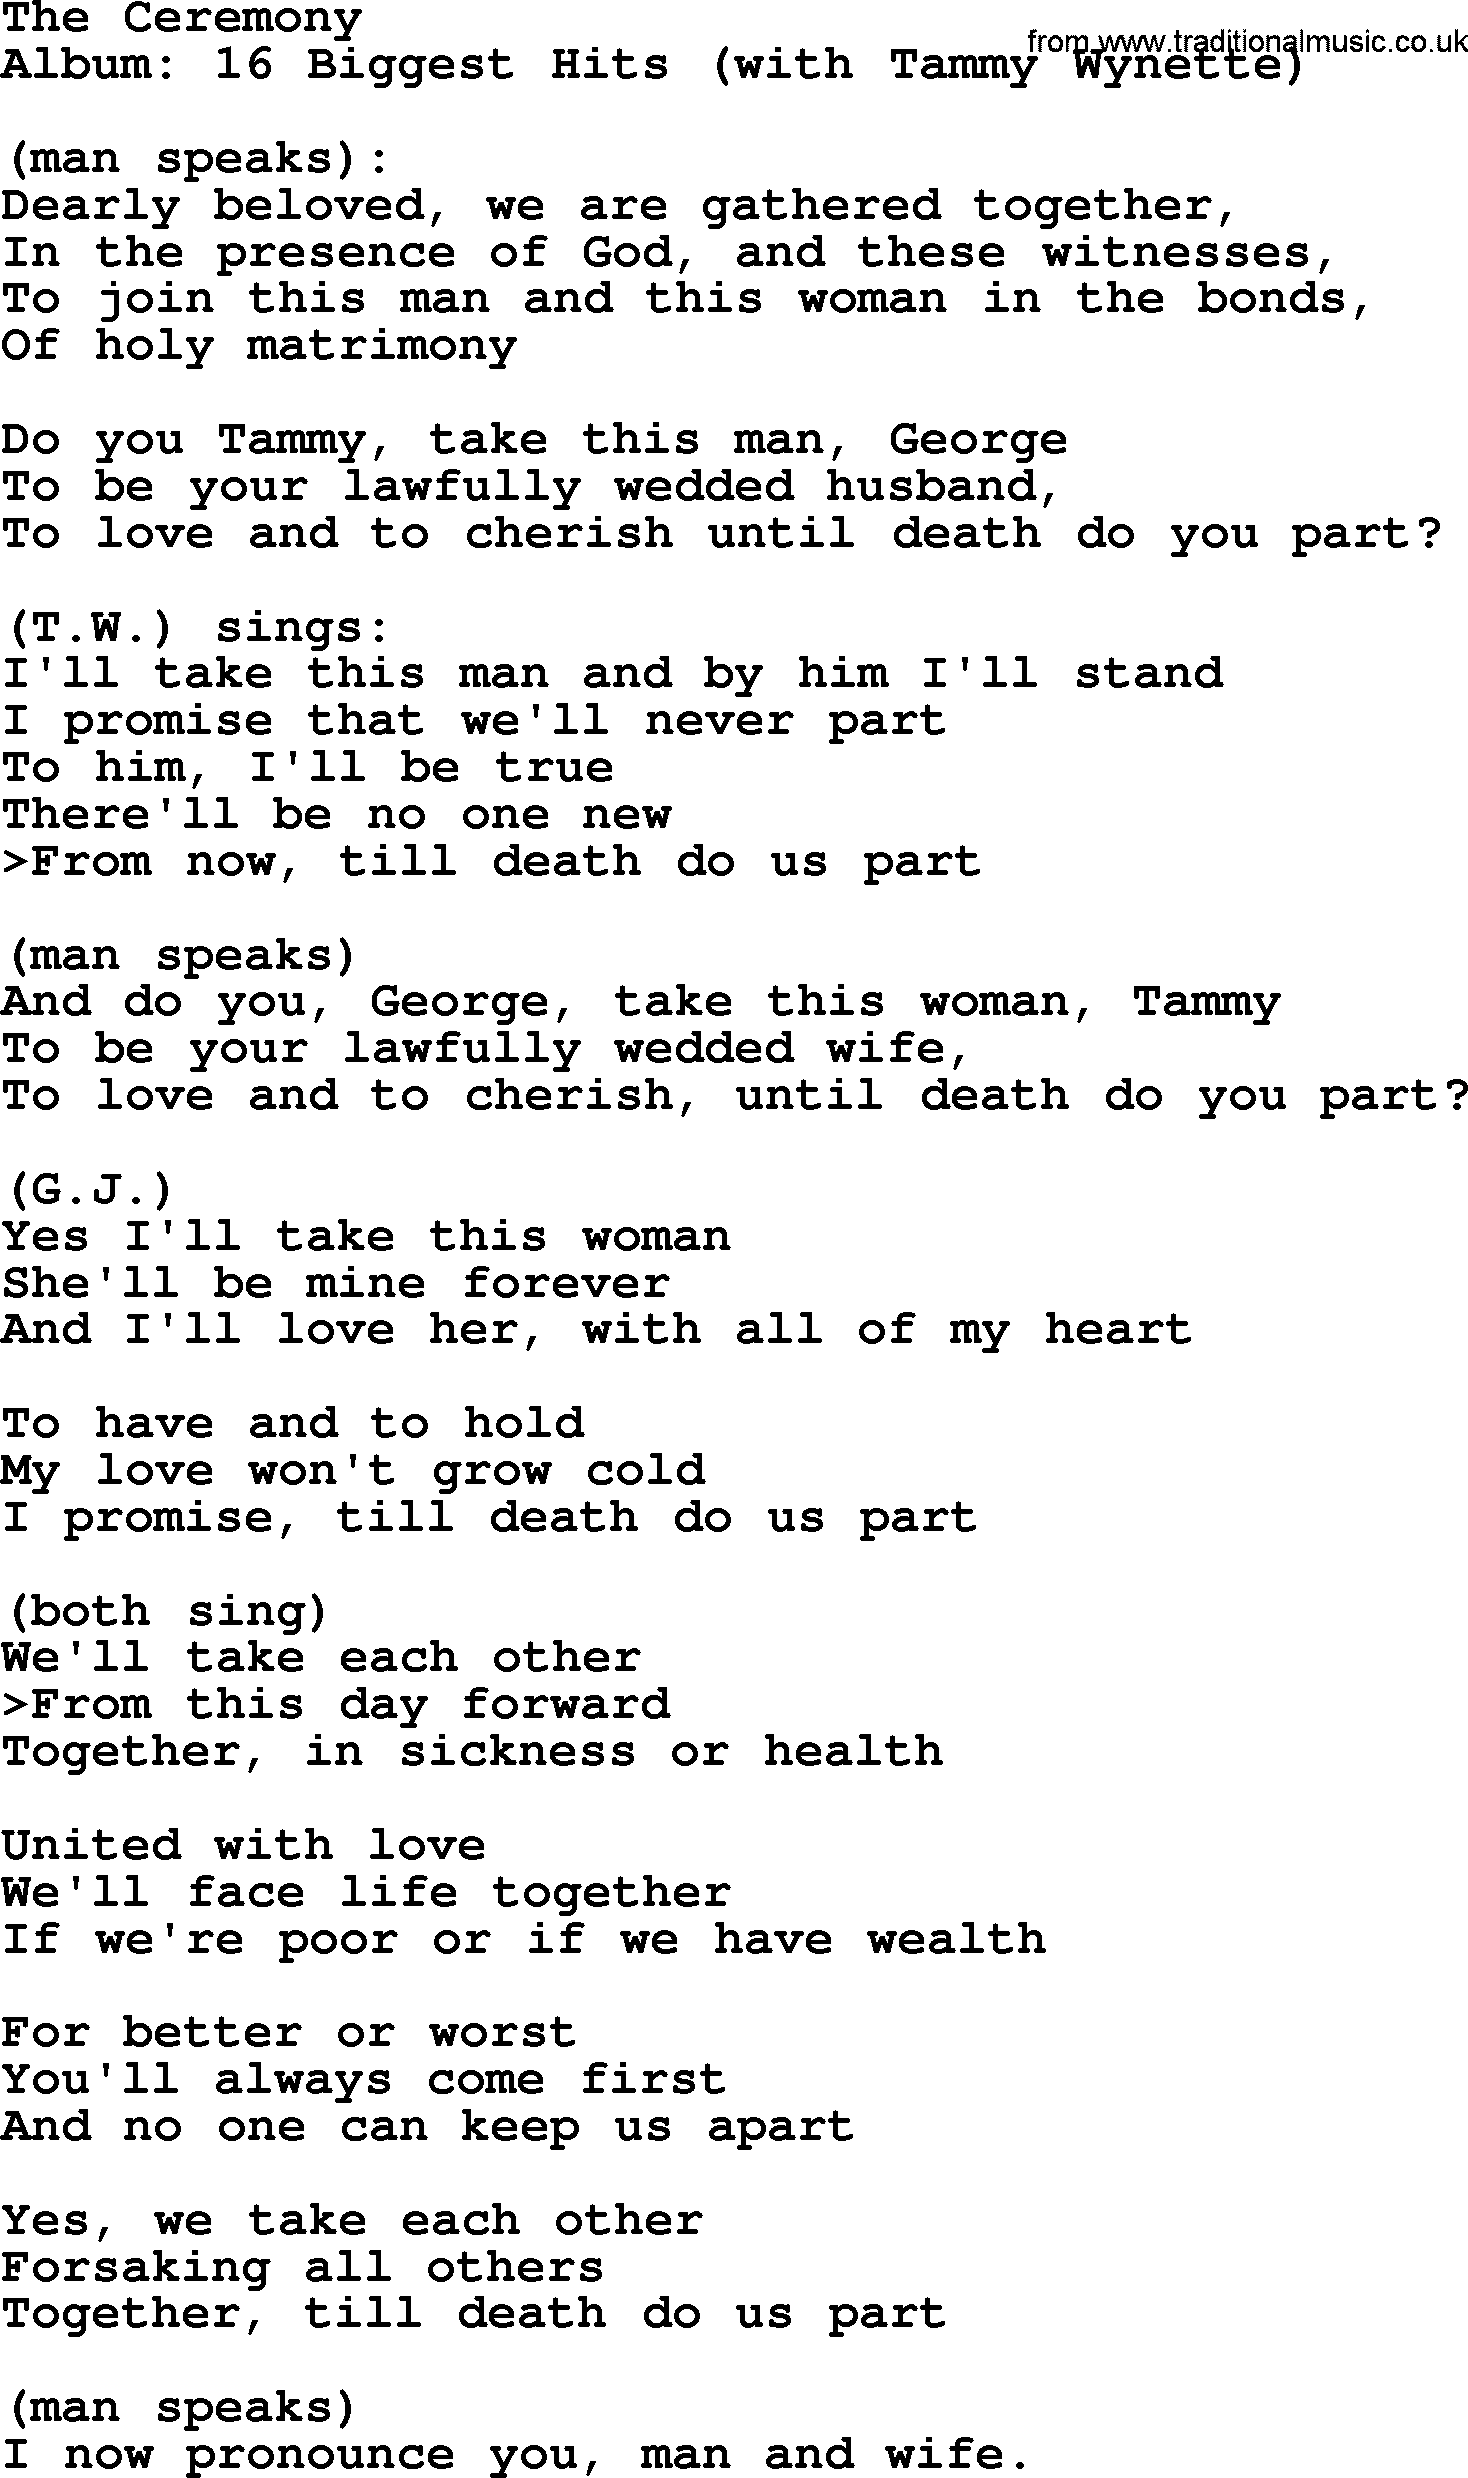 George Jones song: The Ceremony, lyrics